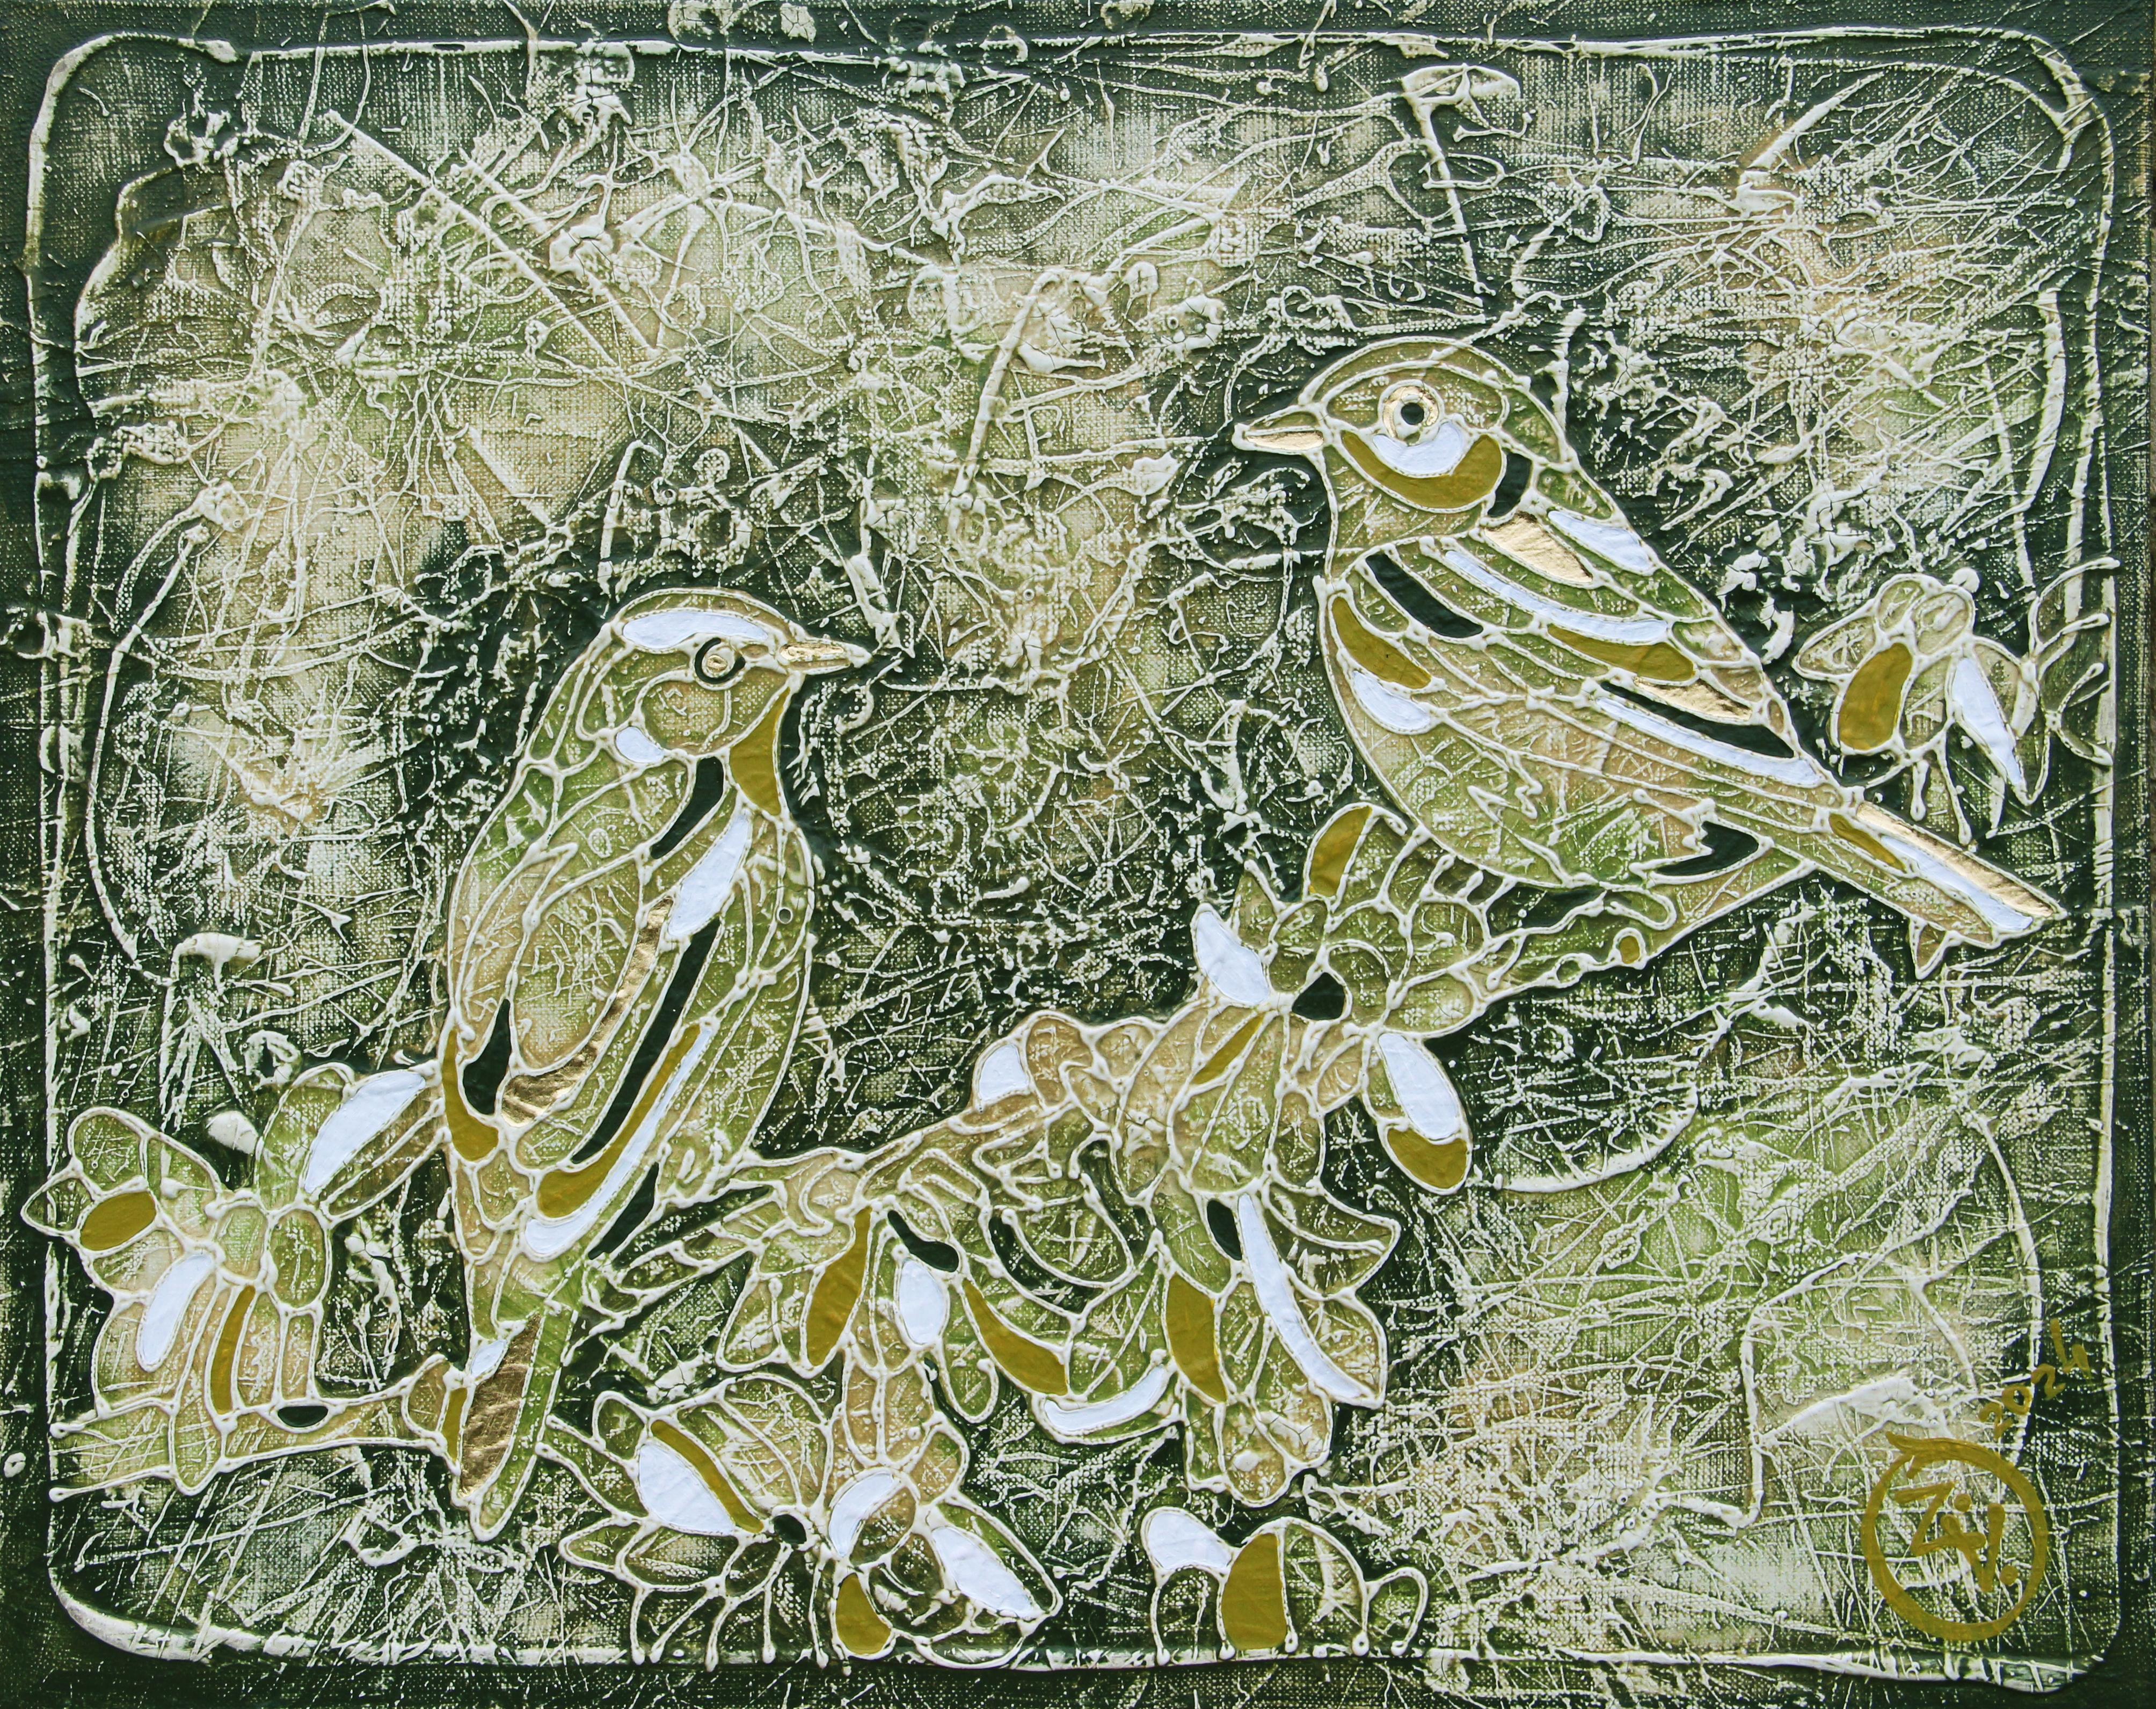 La peinture est réalisée selon la technique de l'auteur, à savoir la peinture acrylique sur toile à base de Vasily Vasko, en utilisant une variété de textures, de lavis, de glacis les plus fins, de contours volumétriques lisibles au toucher pour les